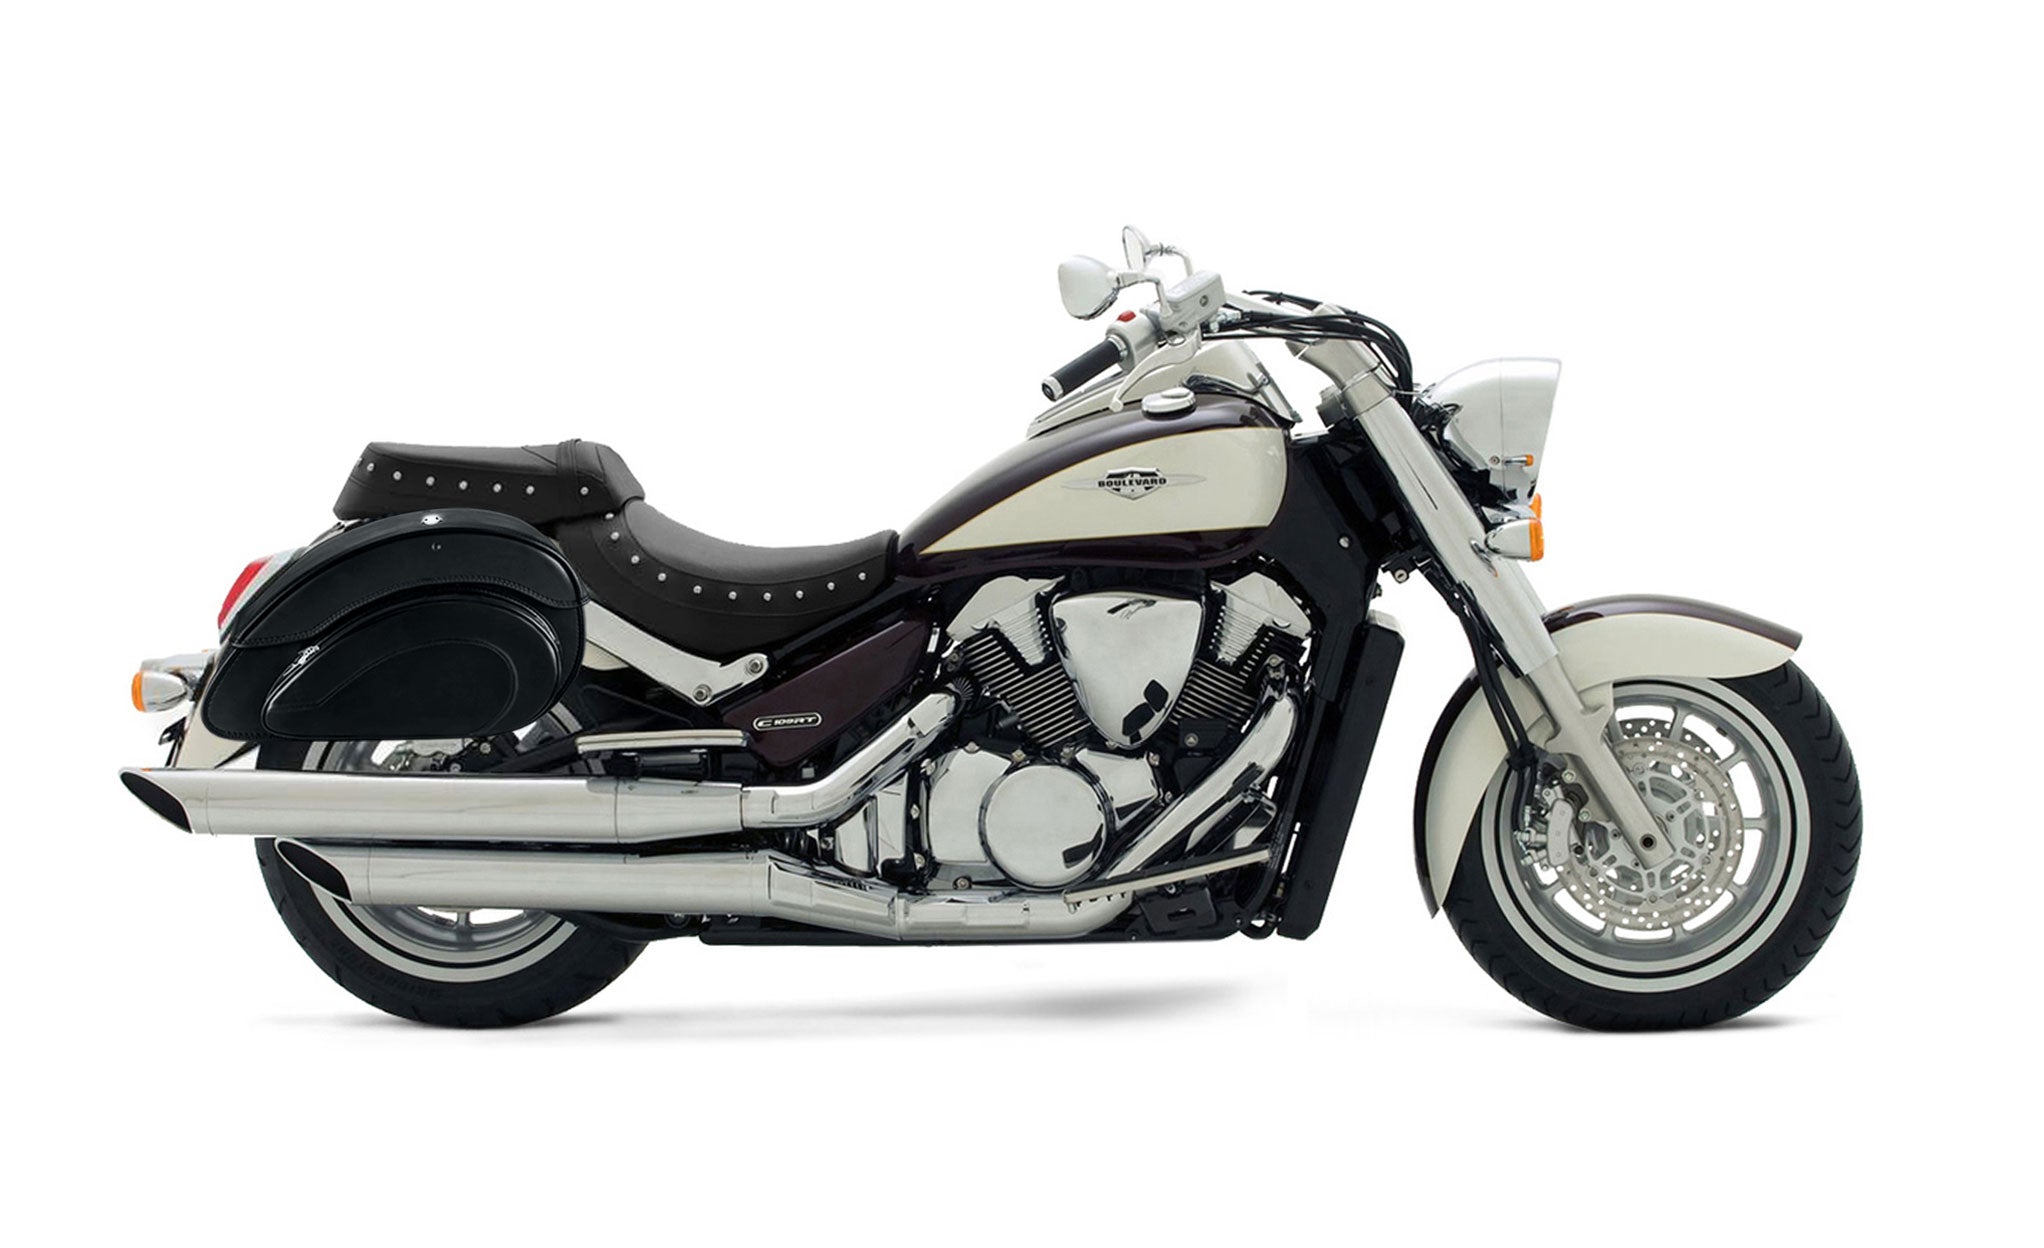 Viking Overlord Large Suzuki Boulevard C109 Leather Motorcycle Saddlebags on Bike Photo @expand